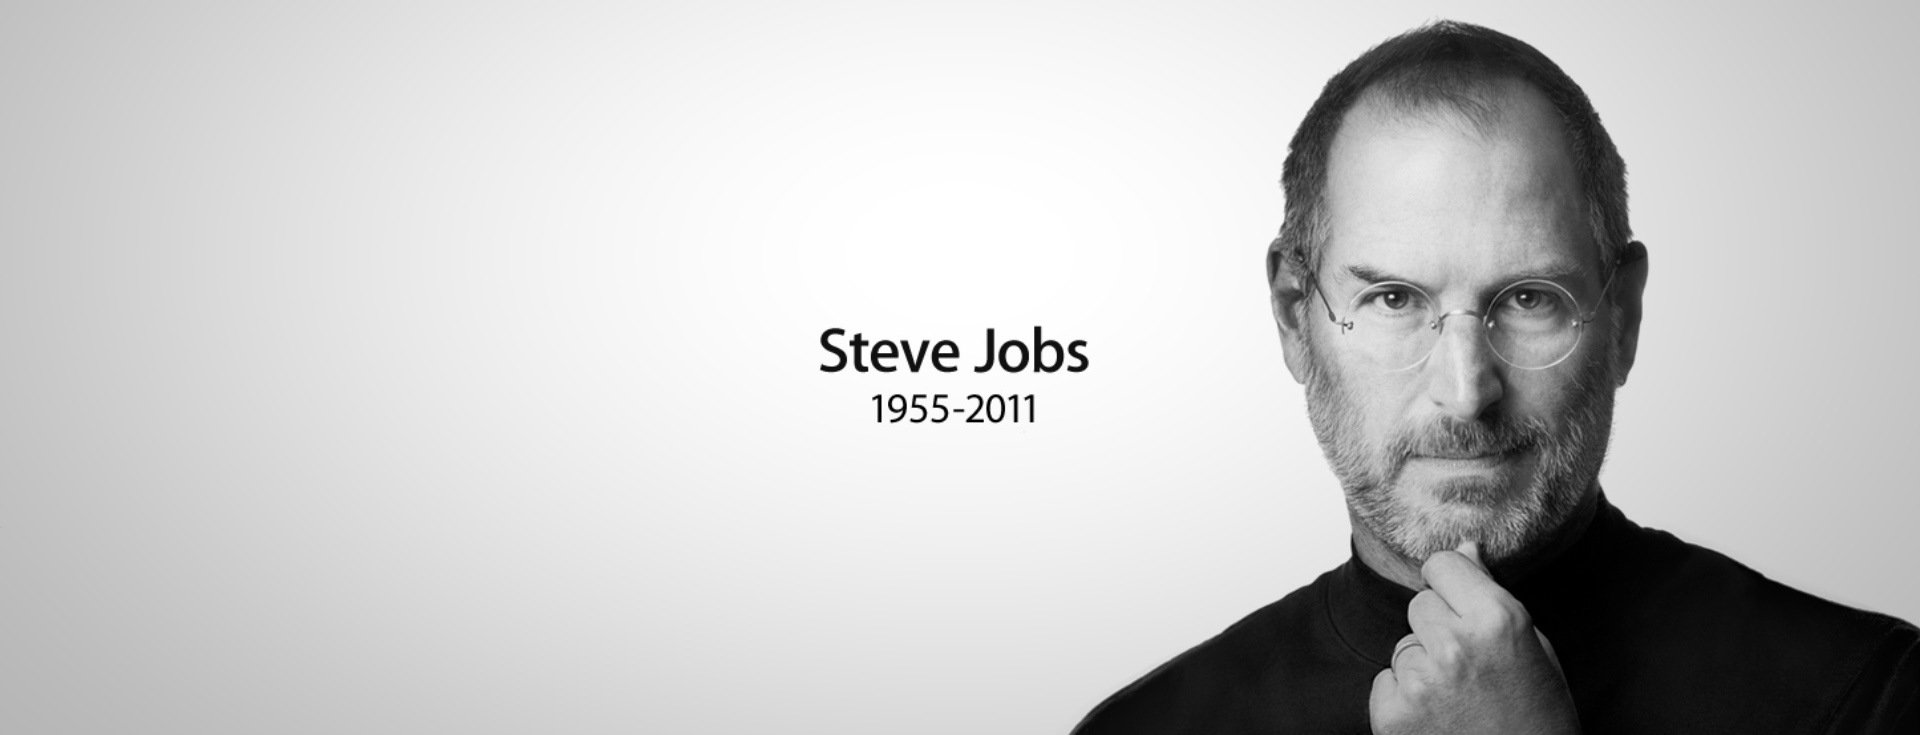 Steve Jobs'un Harika Sunumlar İçin Uyguladığı Sırrı Öğrenin